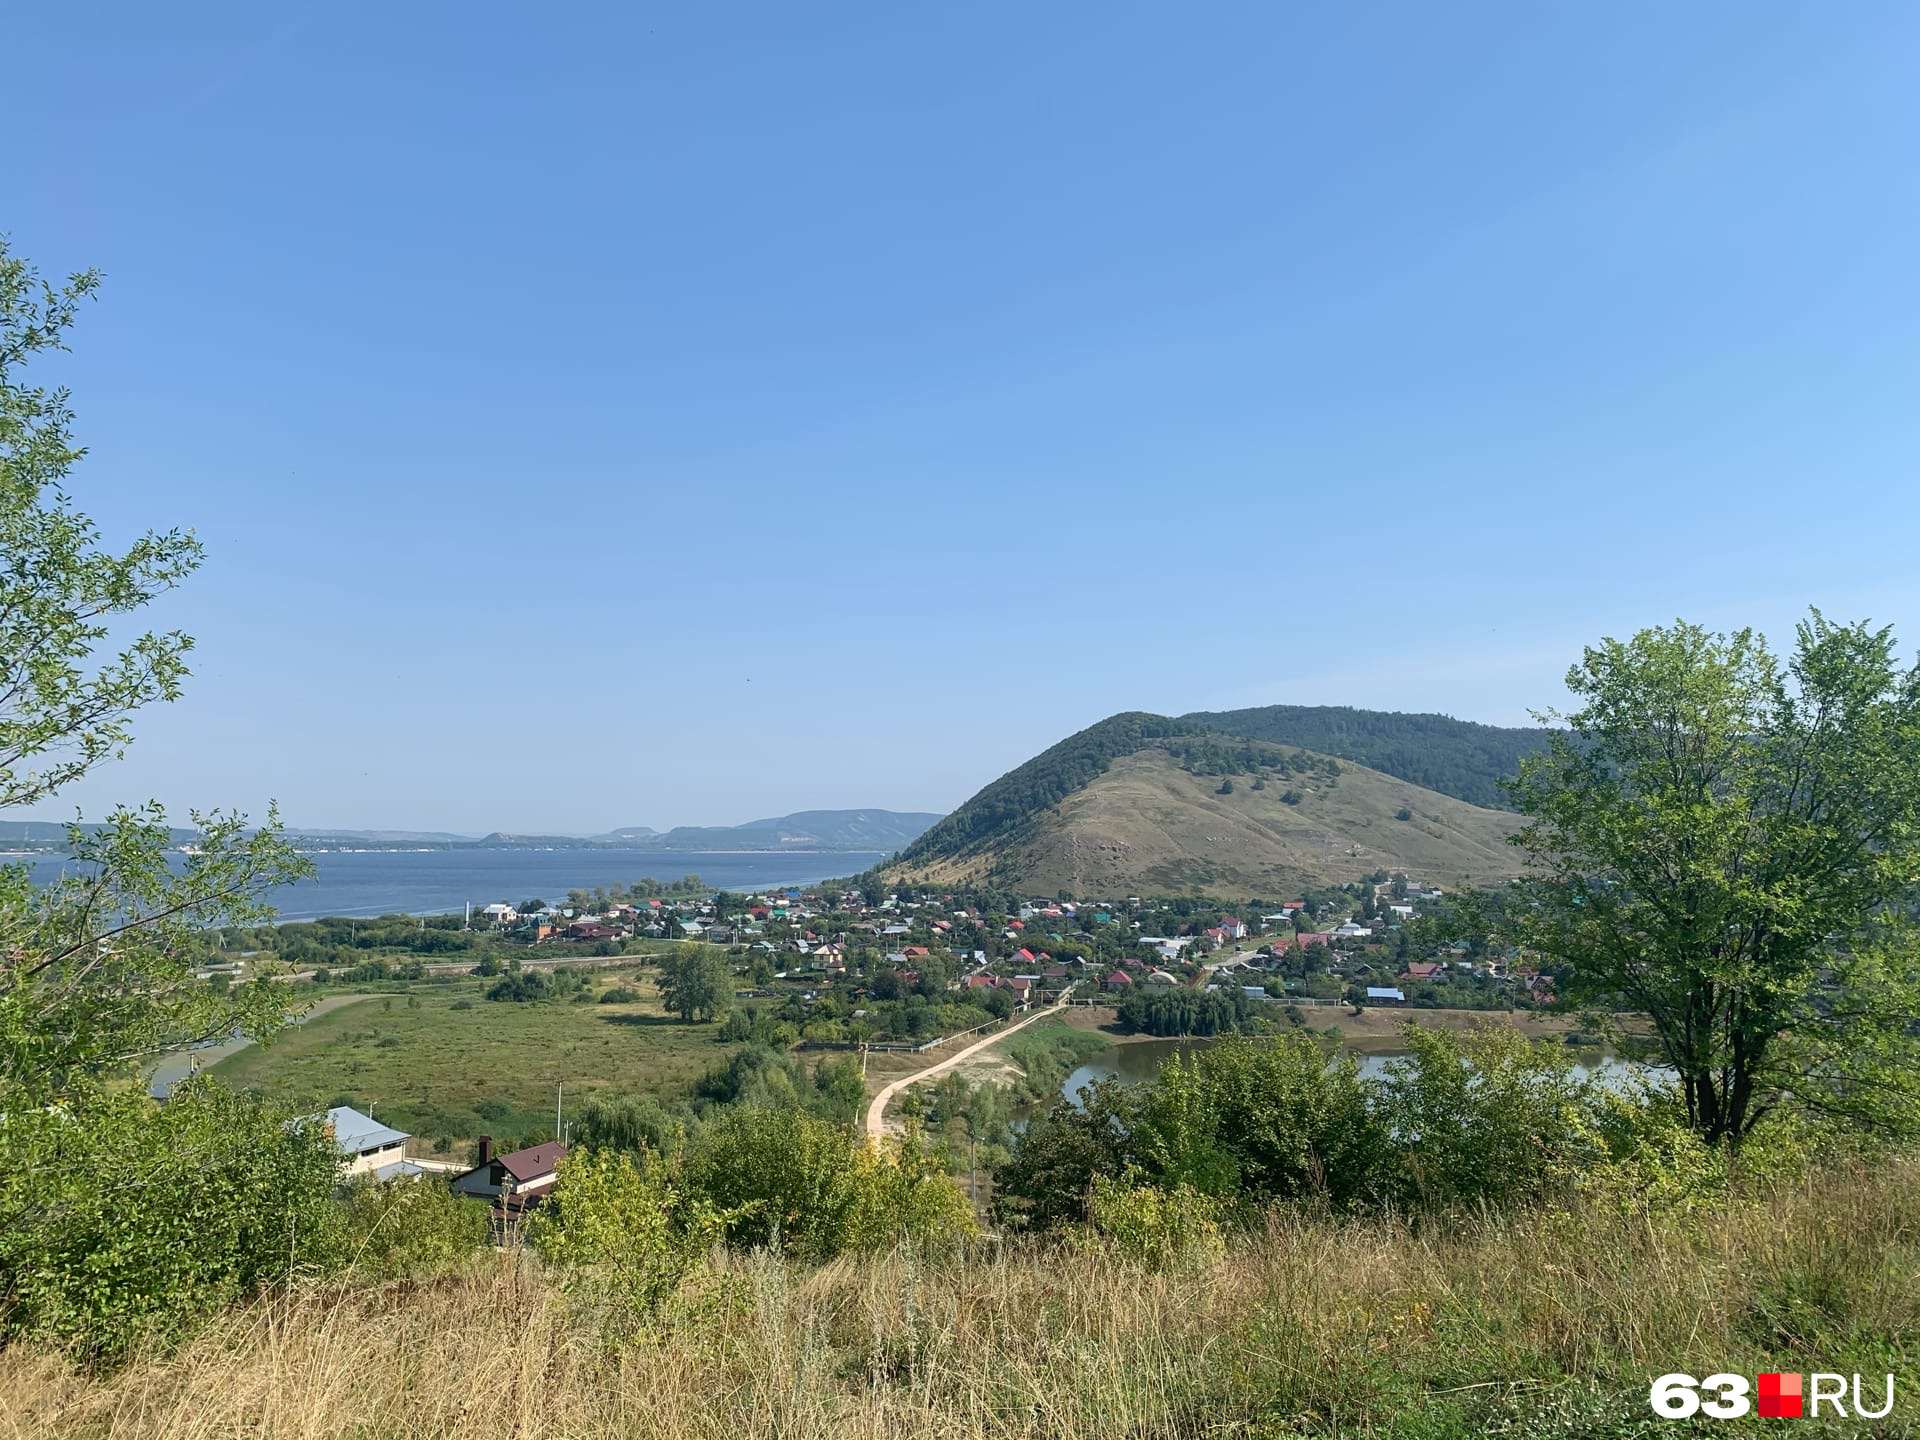 Вид на Монастырскую гору и село